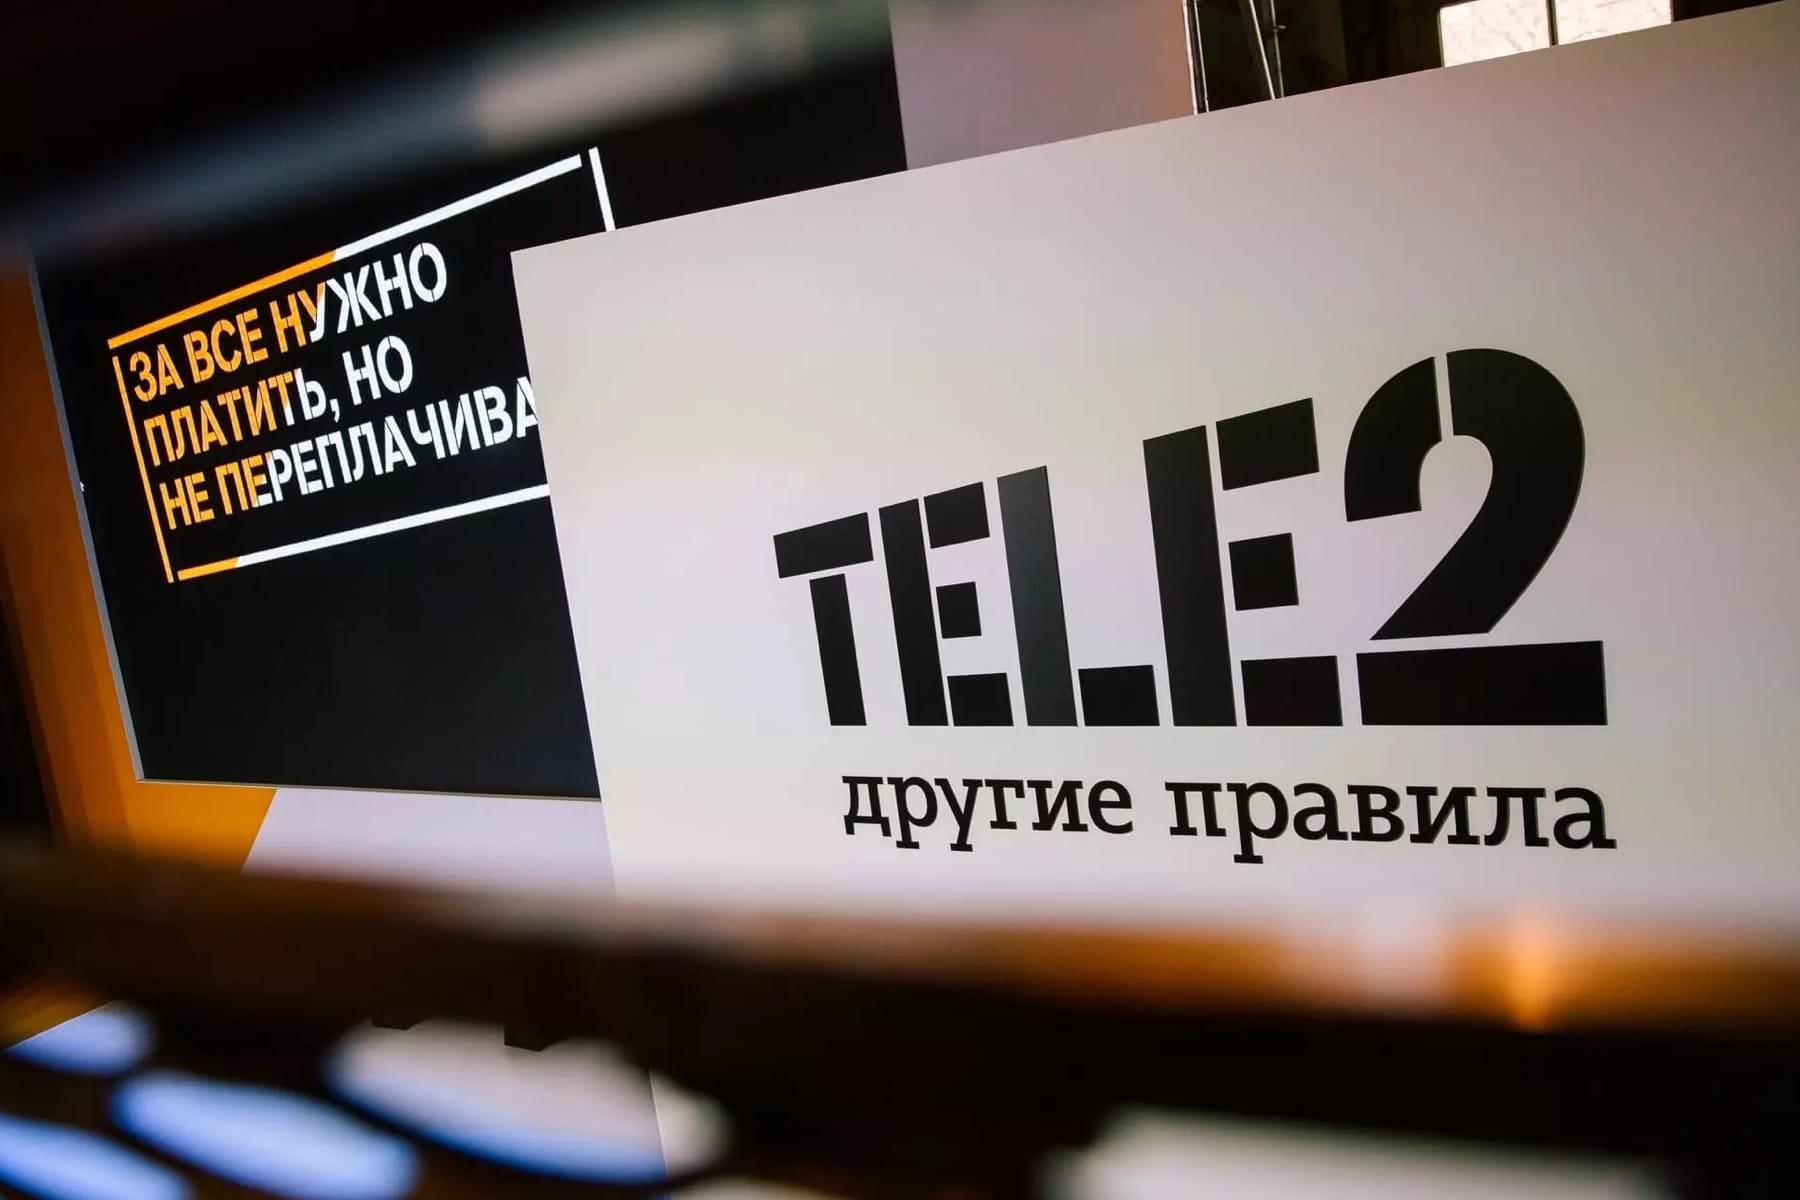 Сотовый оператор Tele2 скрытно сделал раздачу интернета платной для абонентов